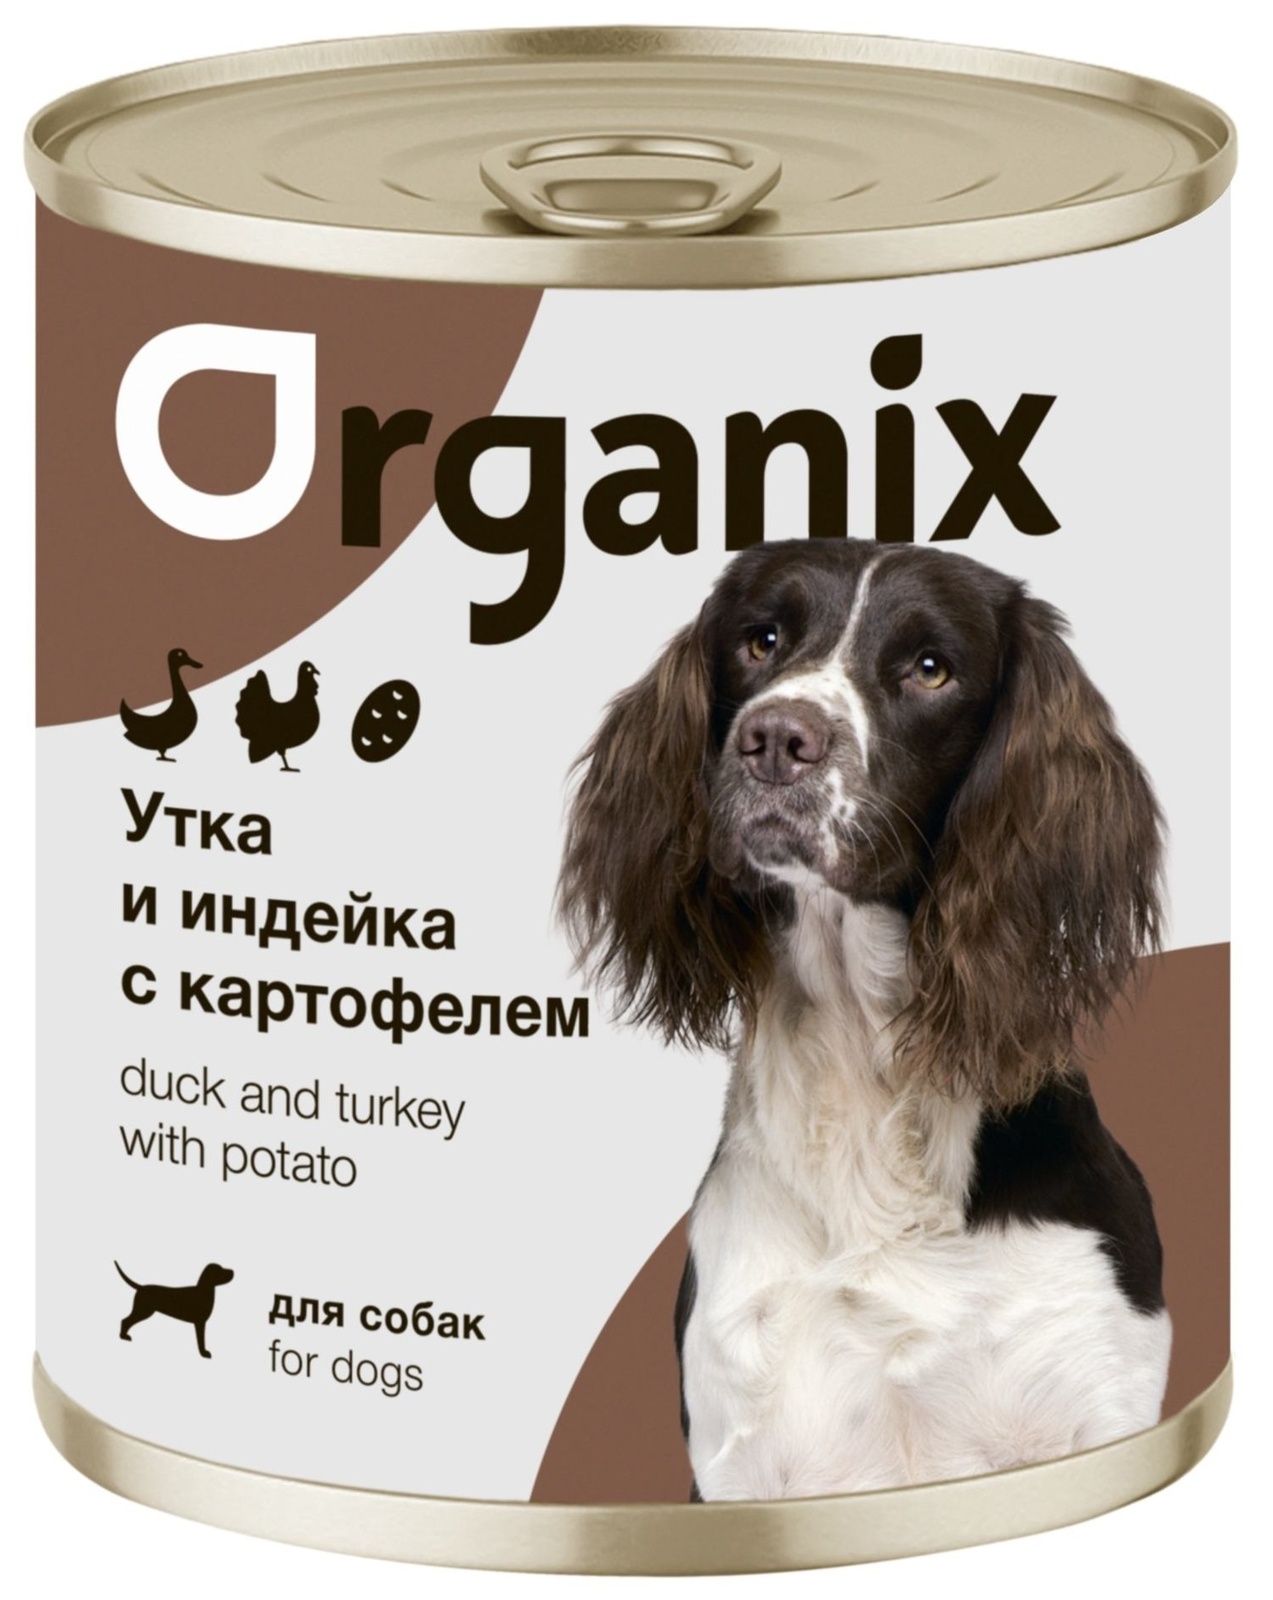 Organix консервы Organix консервы для собак Утка, индейка, картофель (400 г) organix консервы organix консервы для собак индейка с овощным ассорти 400 г